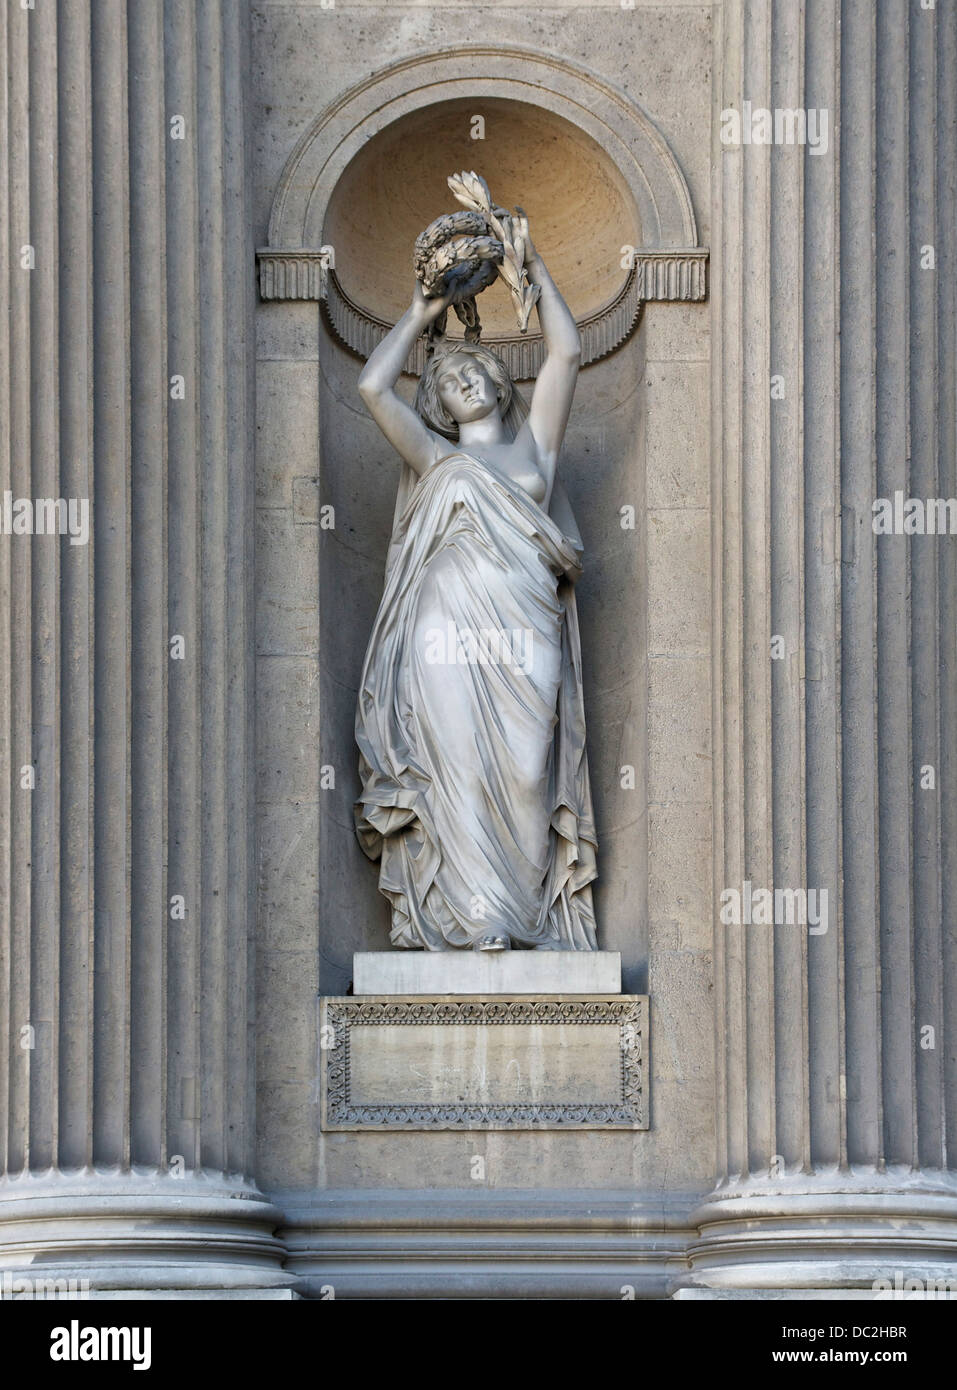 Une statue de niche dans la Cour carrée du Palais du Louvre, Paris, France. Banque D'Images